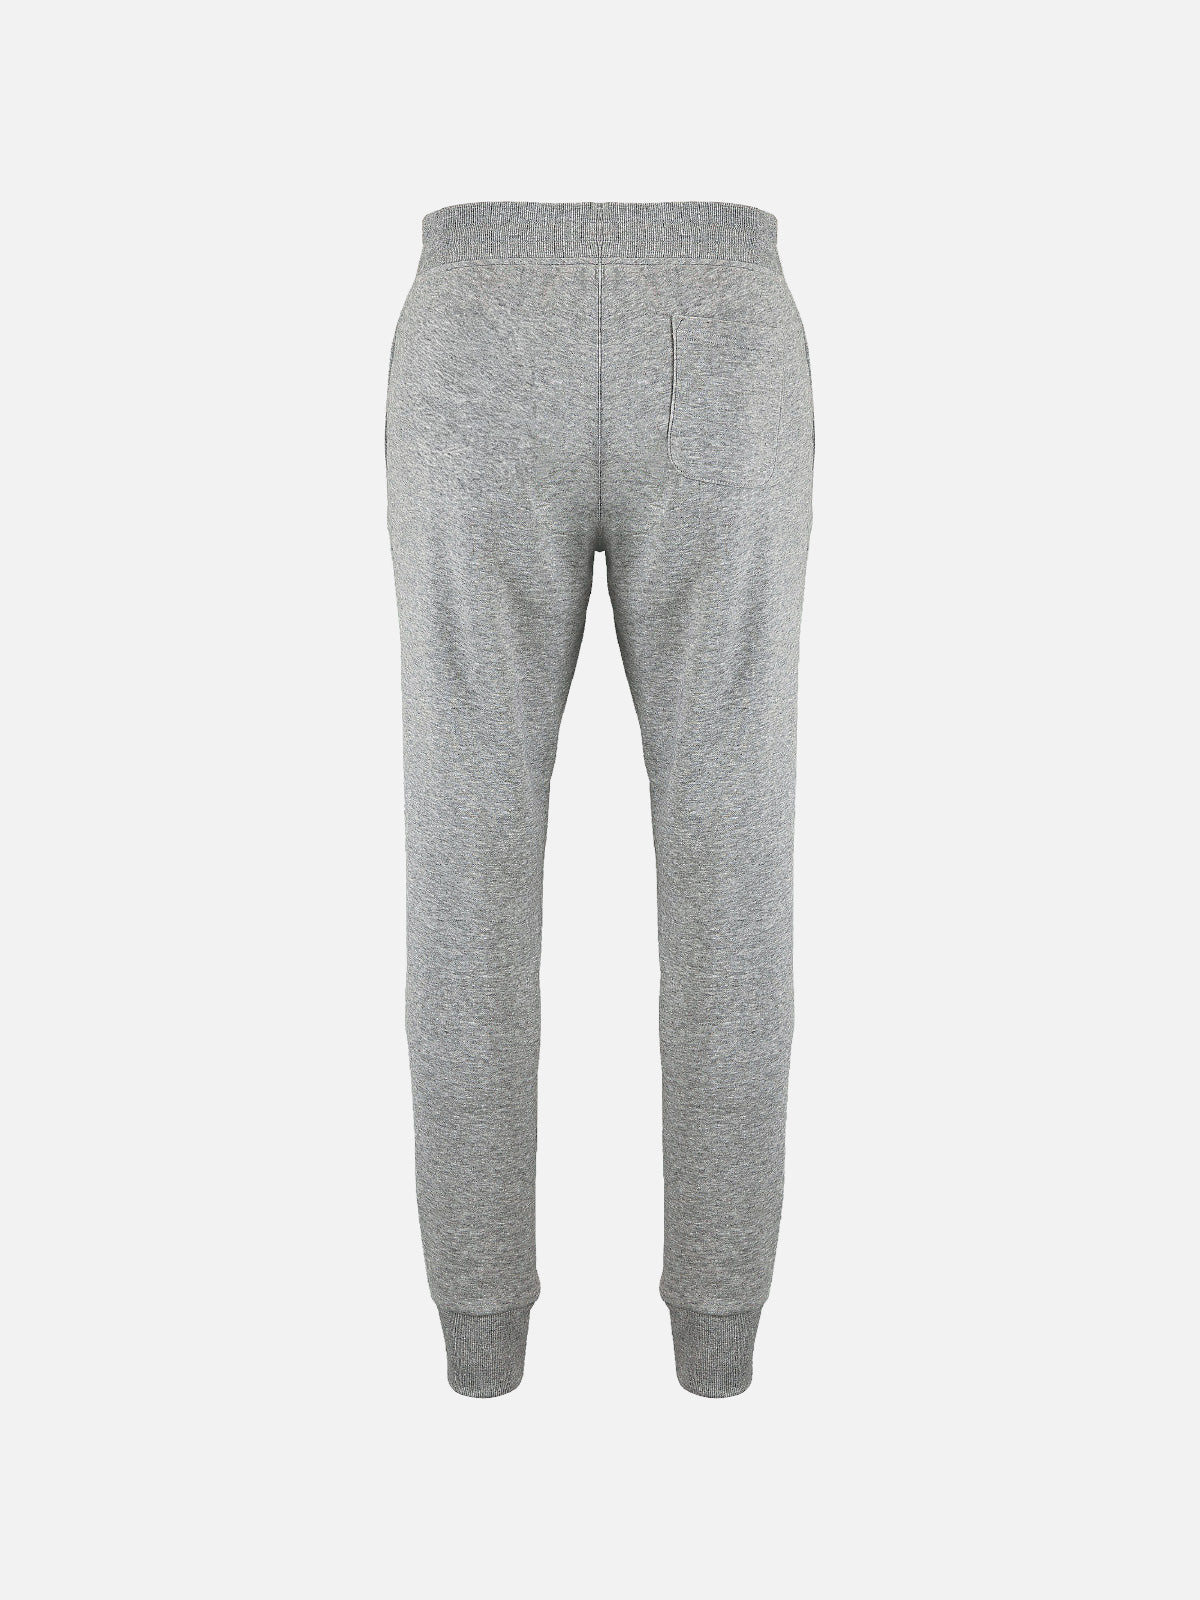 Pantalone Iconic Uomo - Grey